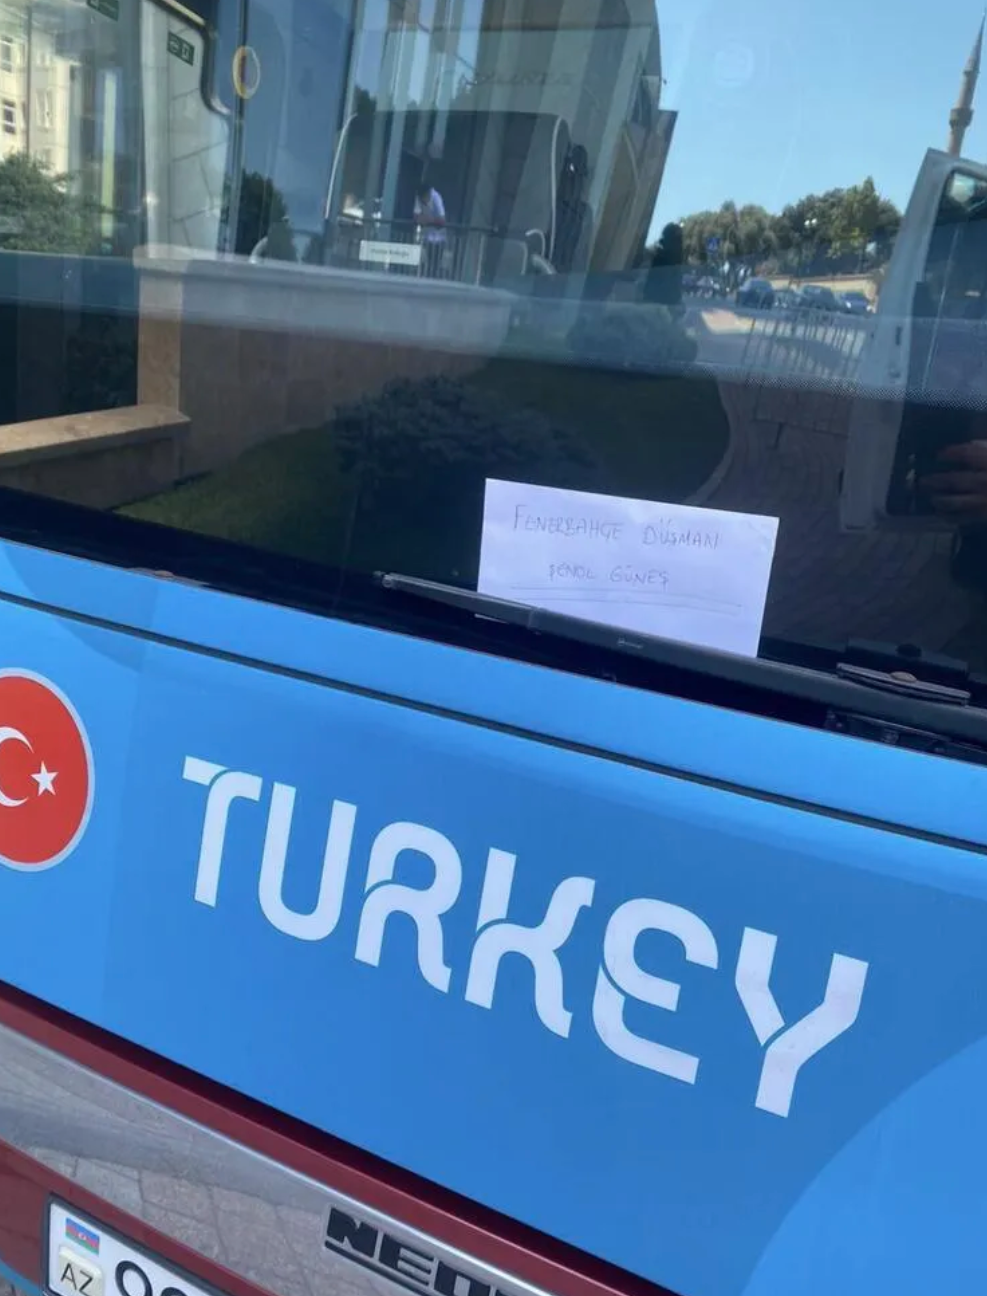 Otobüsün ön camına konulan kağıtta Fenerbahçe düşmanı Şenol Güneş yazdığı görüldü.